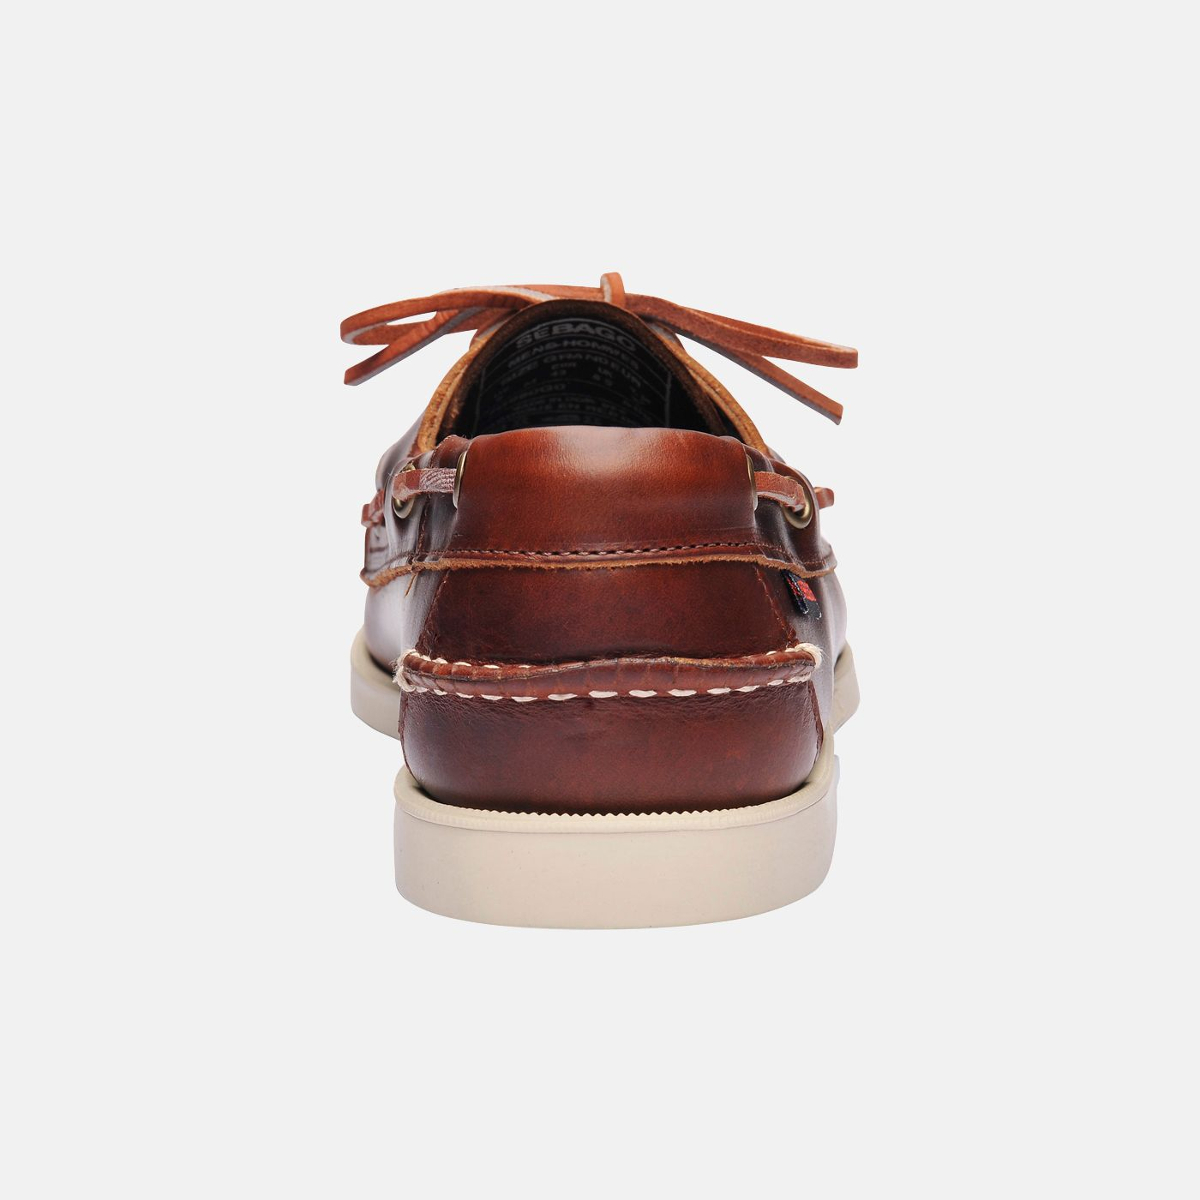 Sebago Docksides bootschoen heren brown oiled waxy leather, maat EU 43.5 (US 9.5)